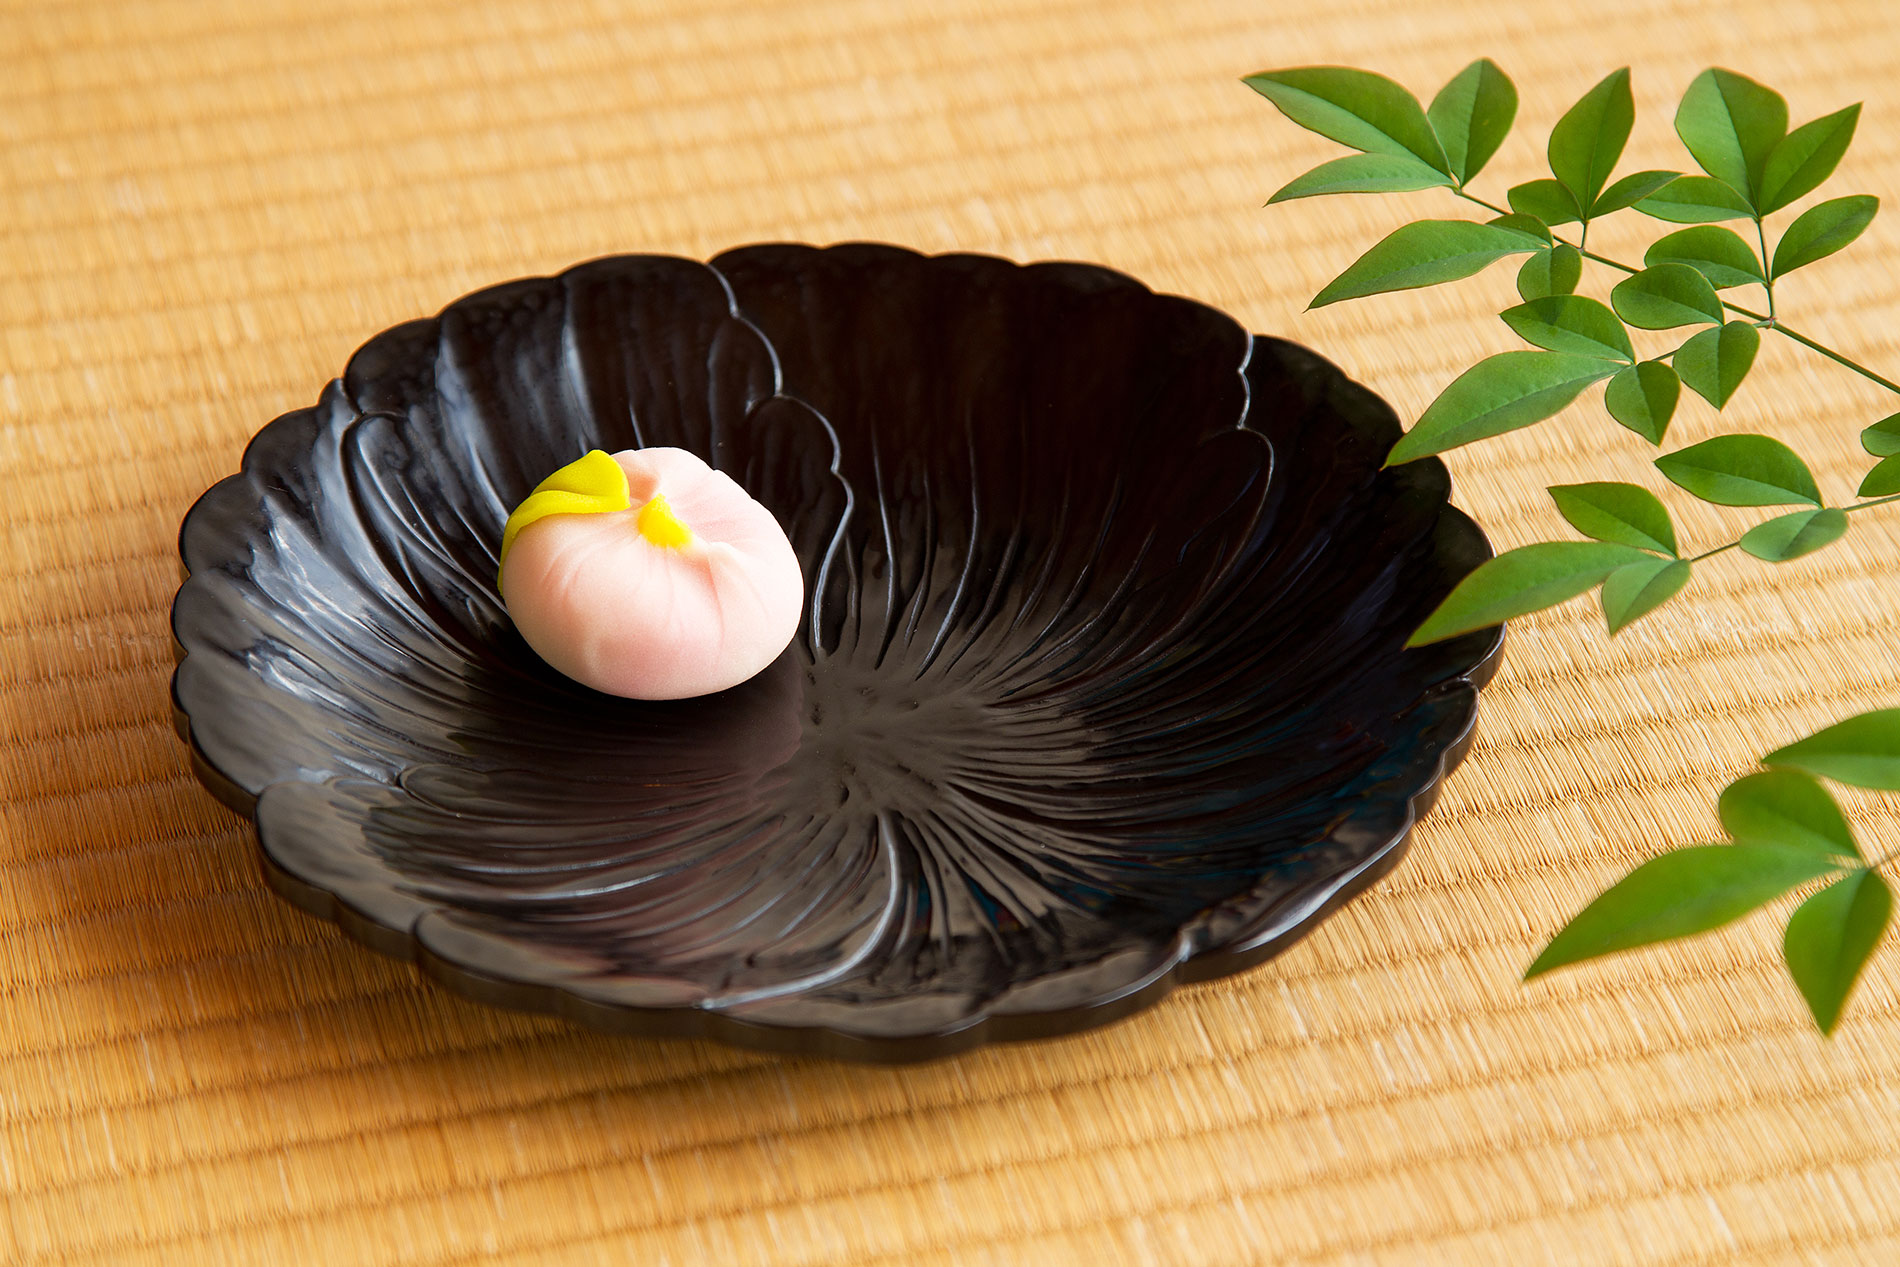 鎌倉らしい伝統ある引き出物として鎌倉彫の和食器などのご贈答品がおすすめです